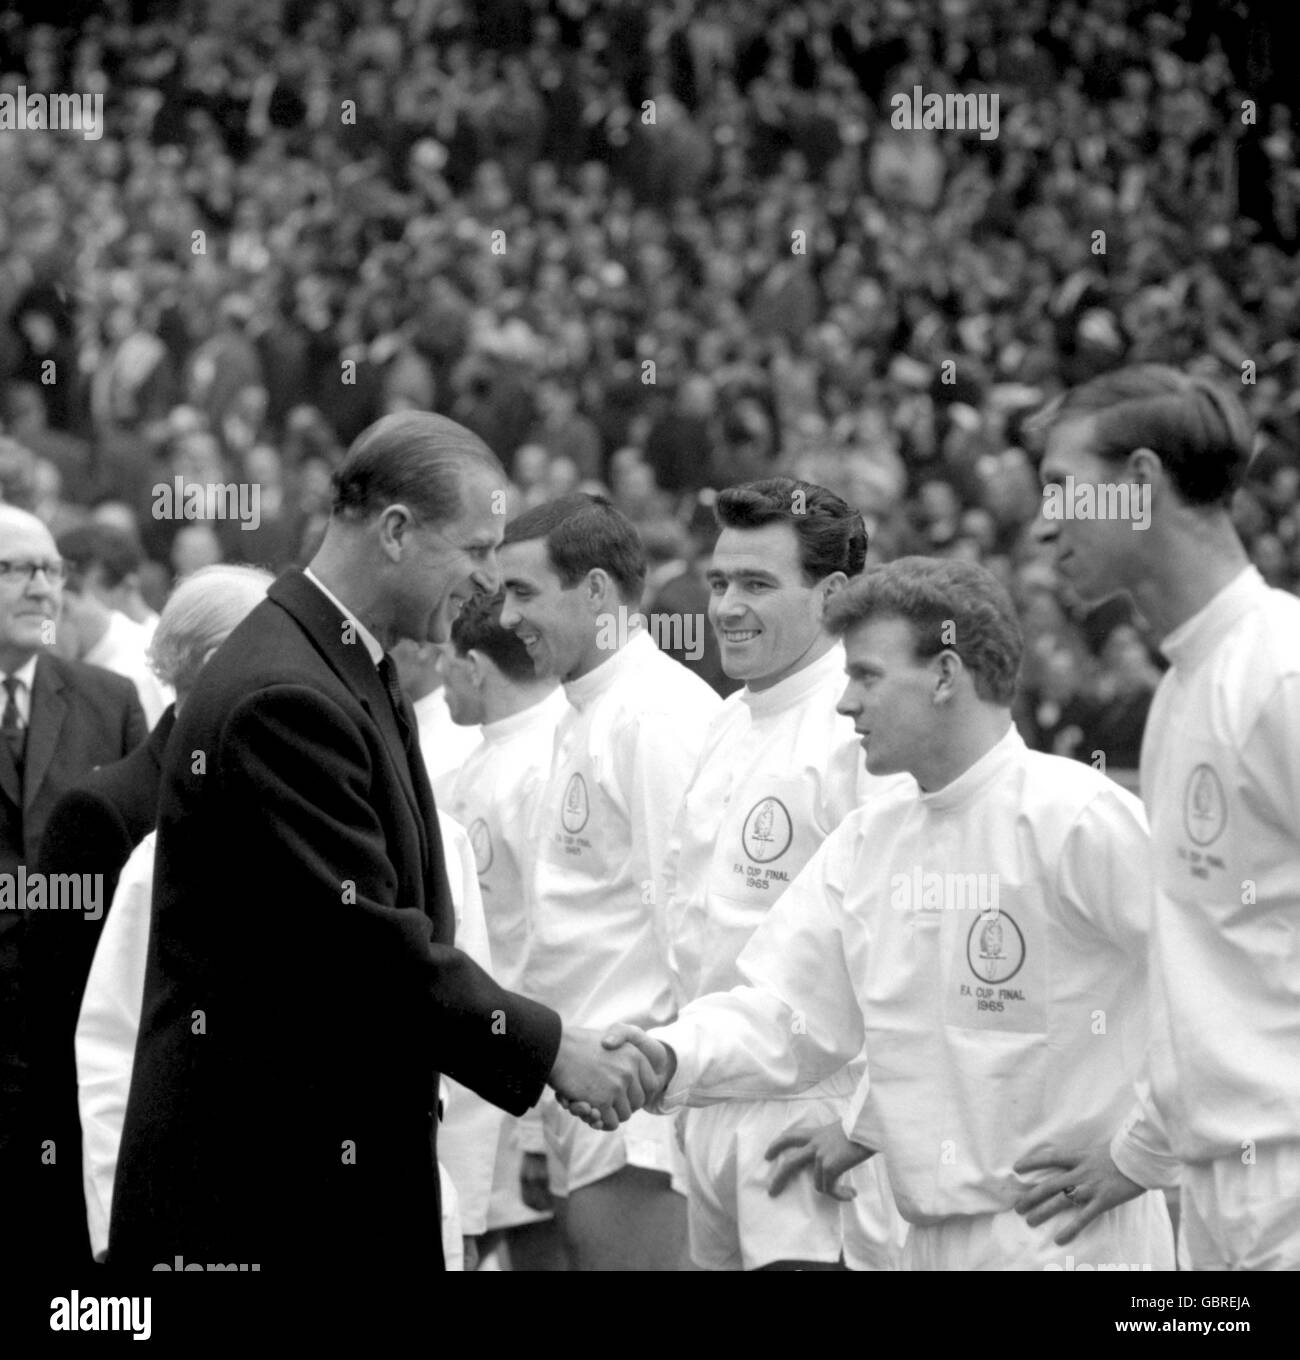 S.H. der Herzog von Edinburgh schüttelt die Hände mit Leeds United Billy Bremner (zweite R) Vor dem Spiel als Leeds' Jack Charlton (r) und Jim Storrie (dritte r) schaut auf Stockfoto